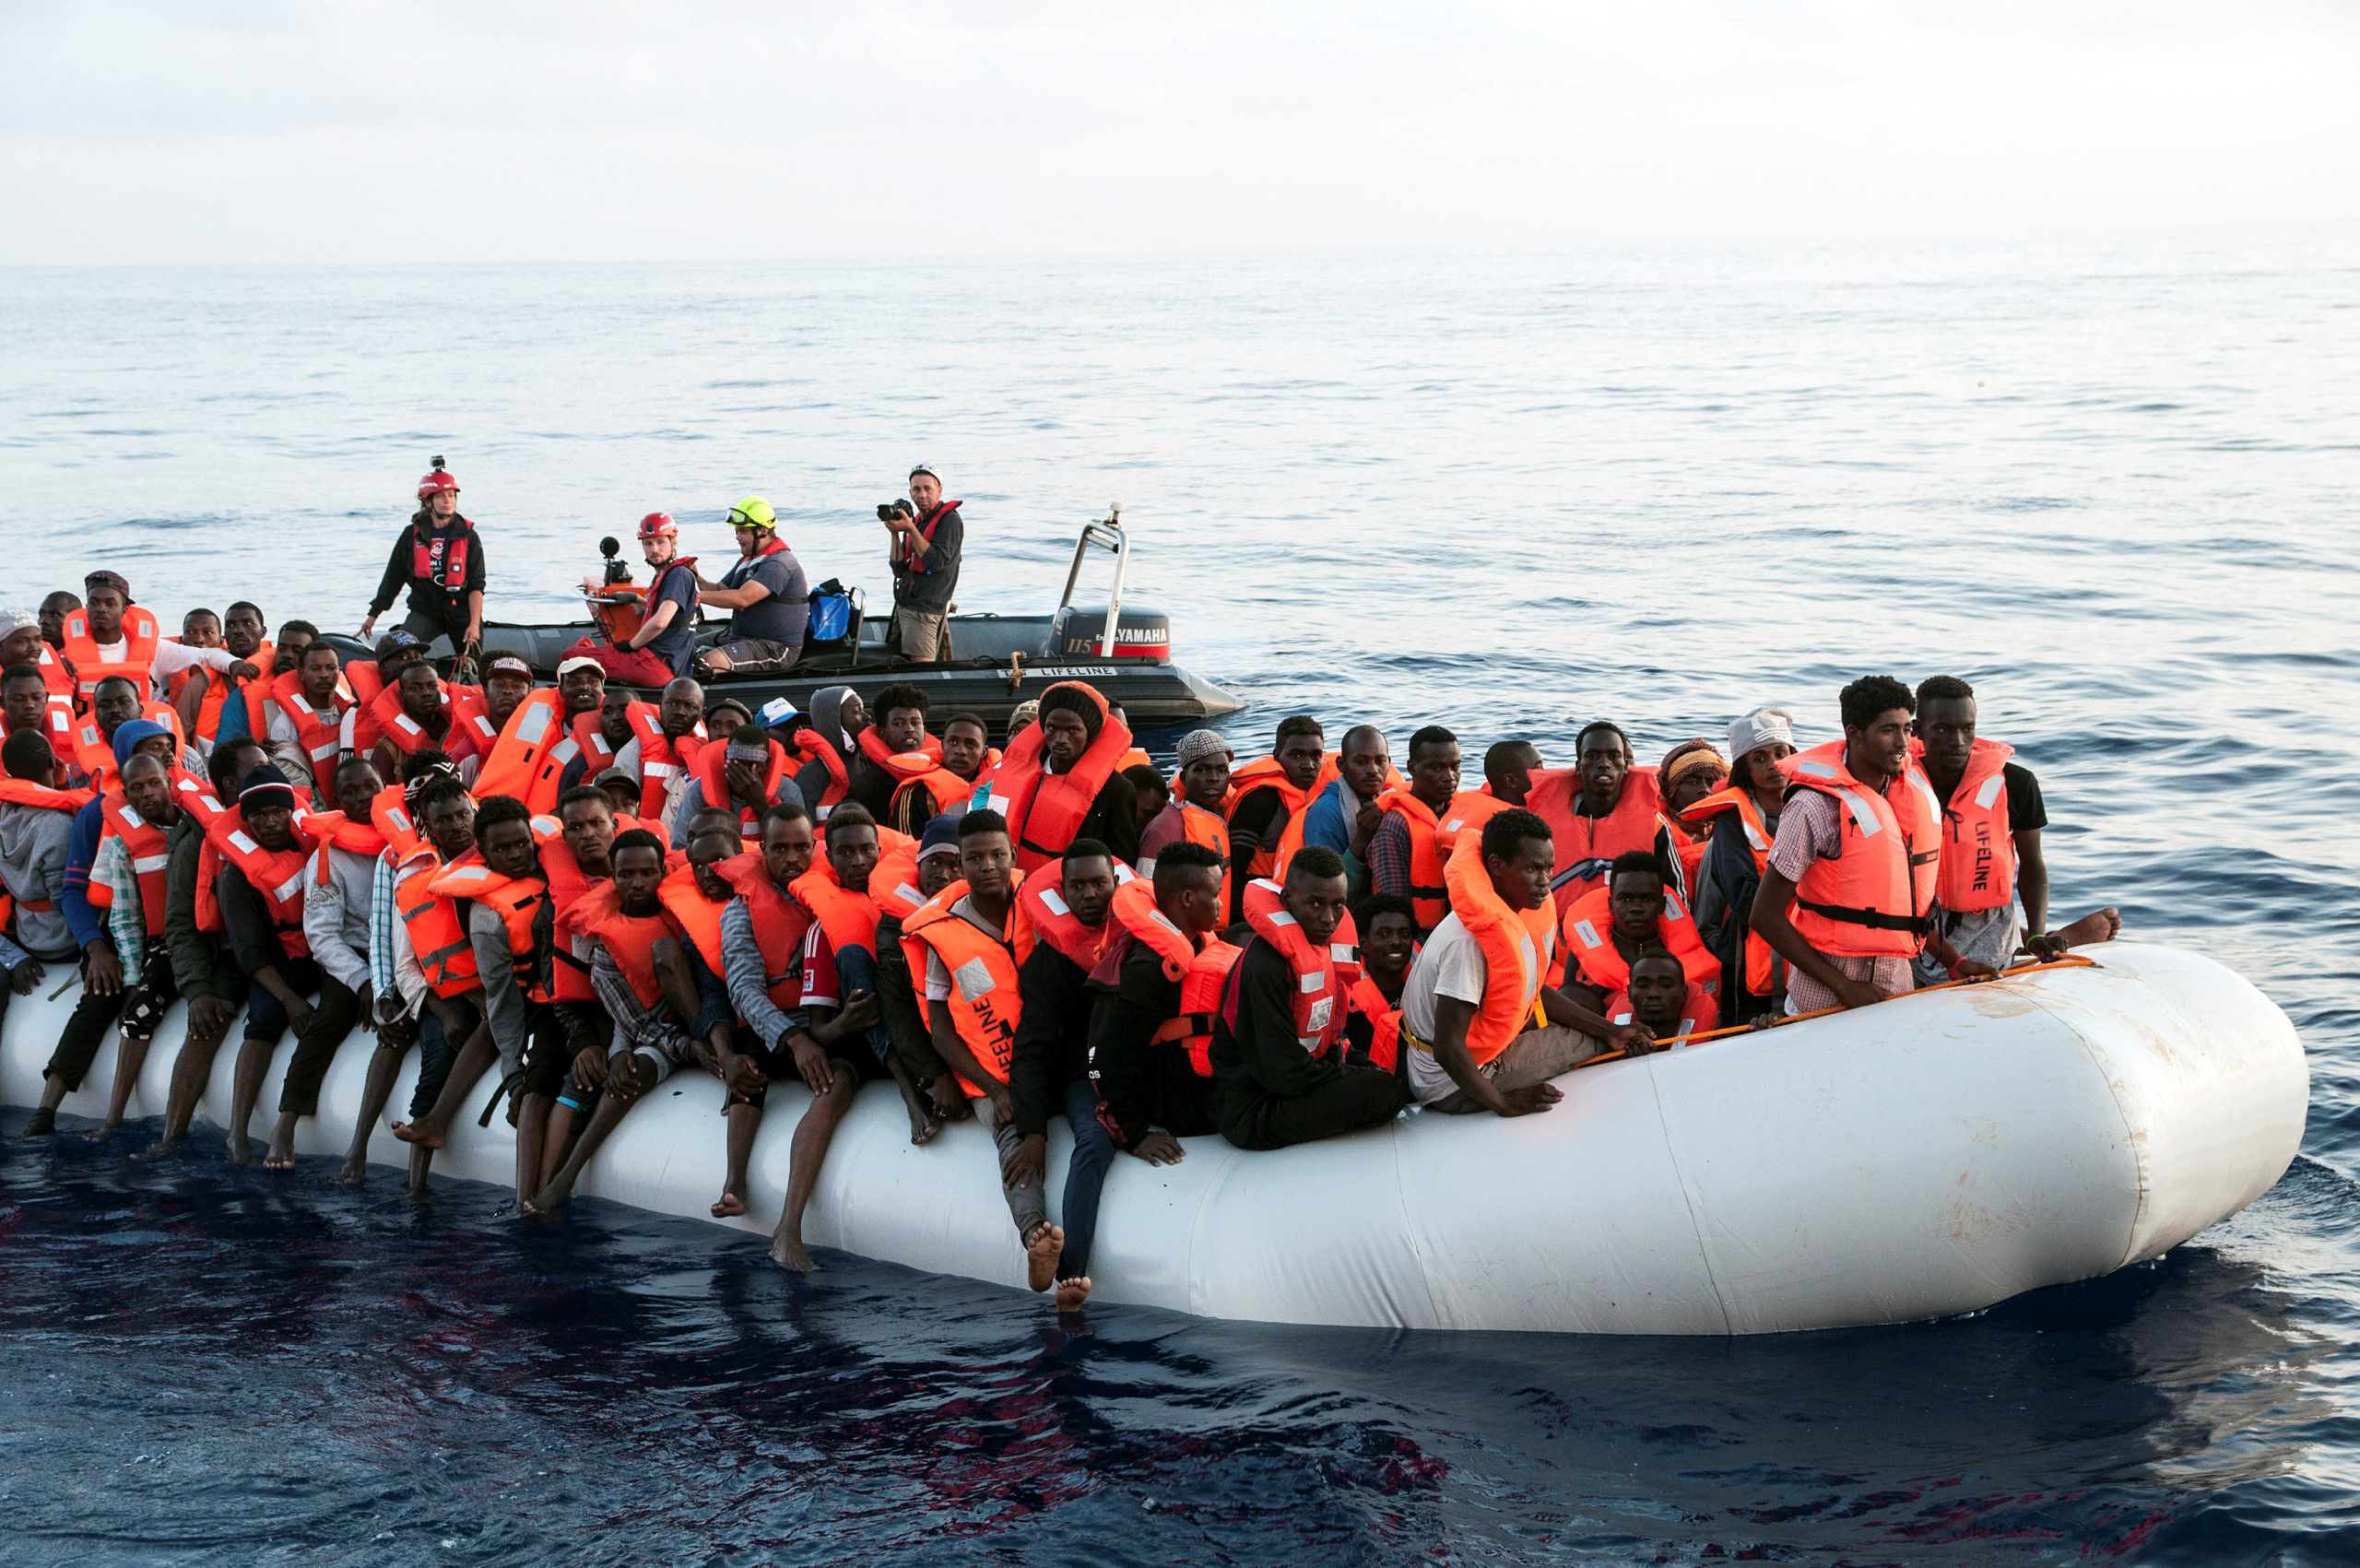 البحرية الملكية تنقذ 845 مرشحا للهجرة غير الشرعية من جنسيات مختلفة